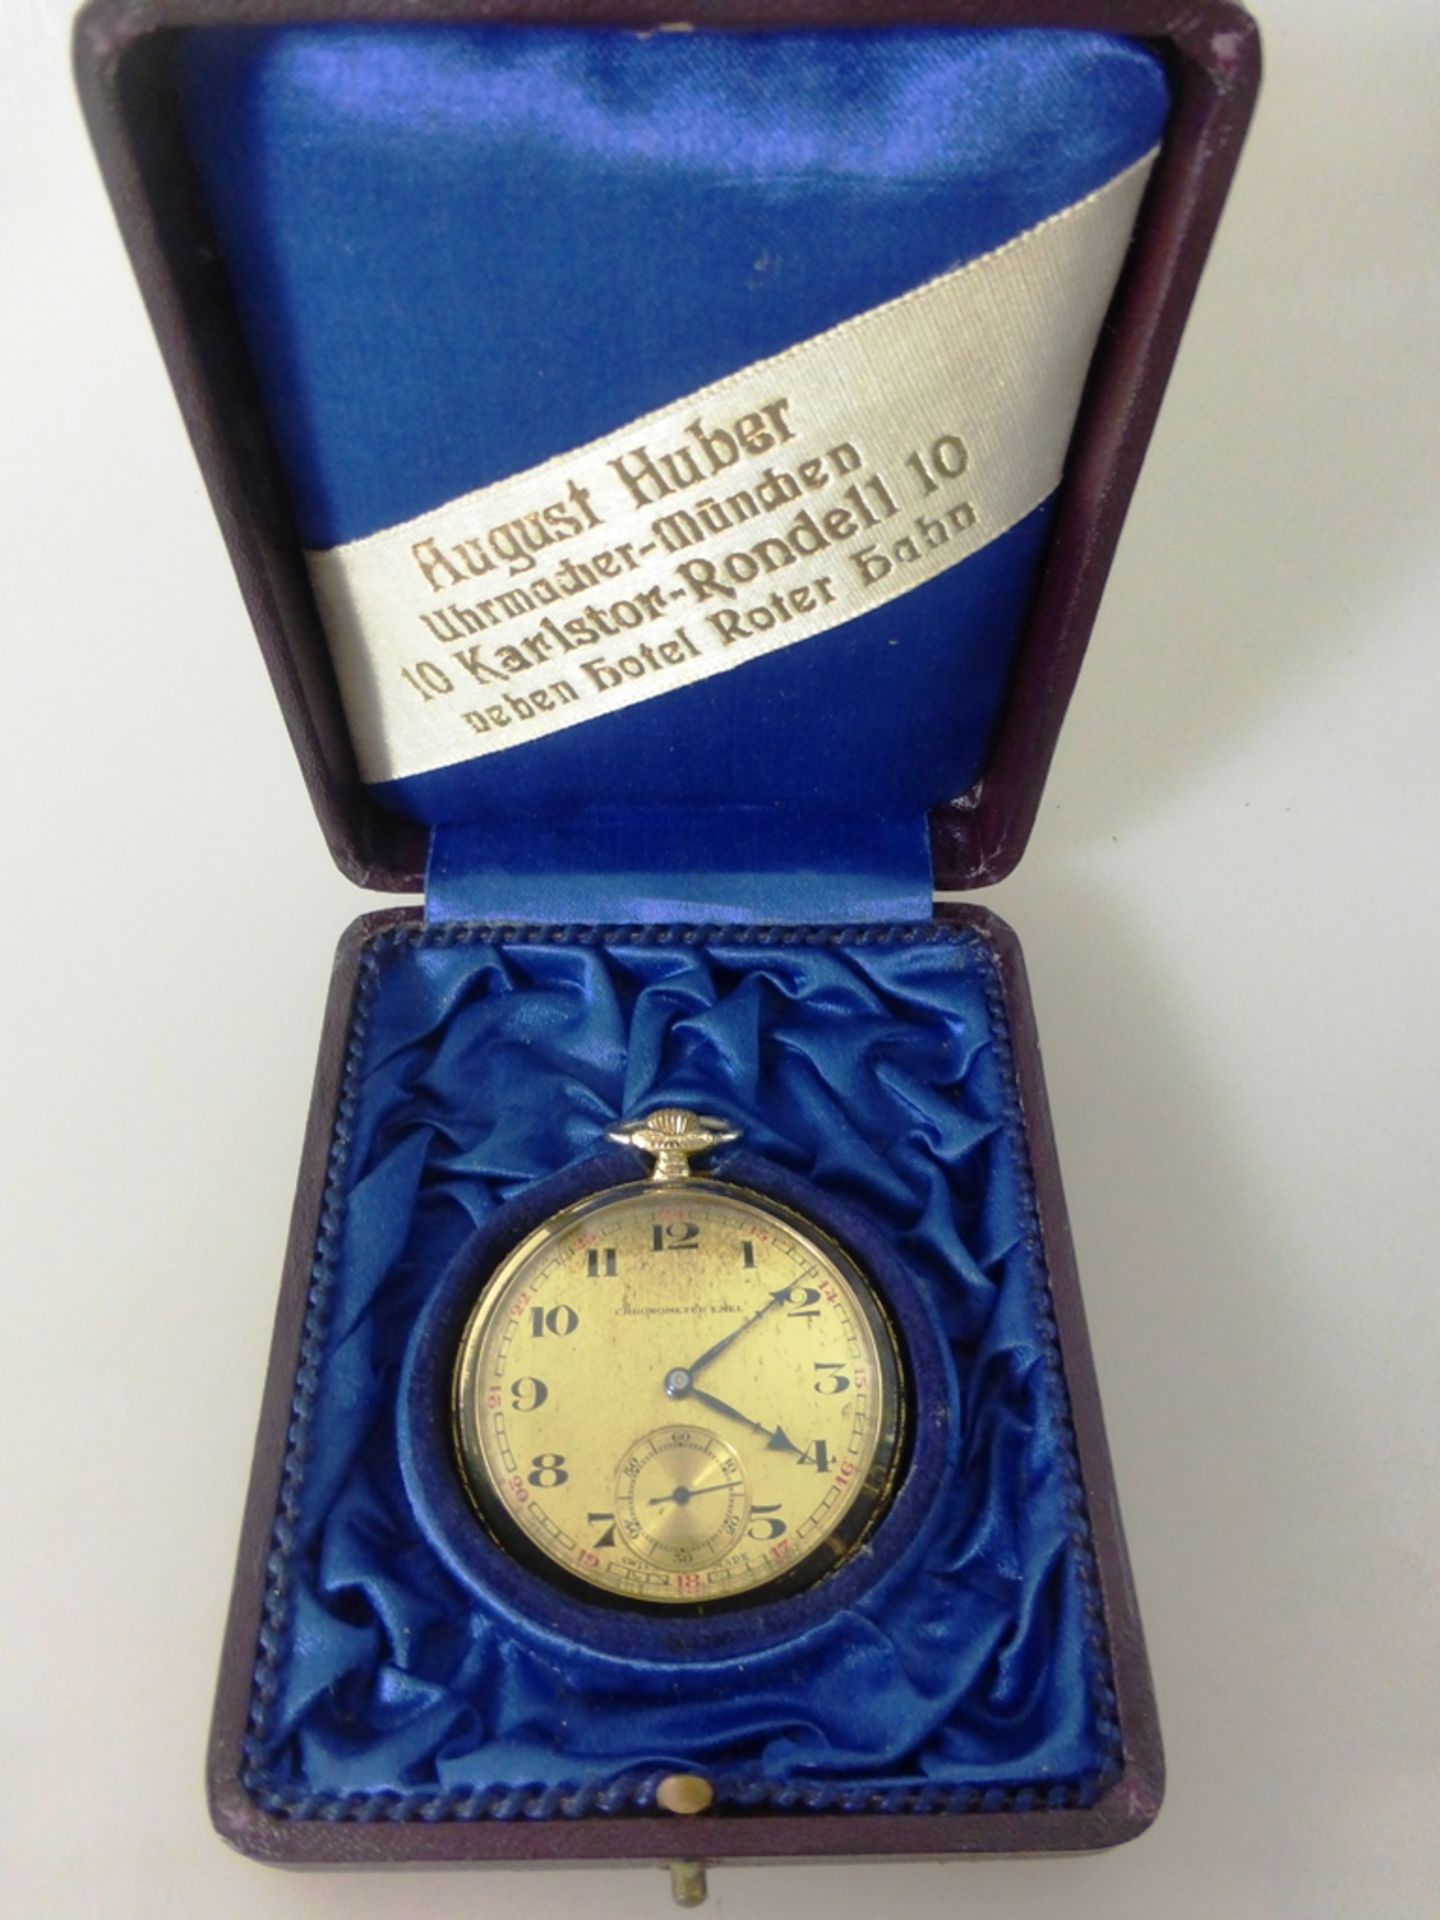 Goldtaschenuhr, Chronometre Emel, mit Streifendekor verziertes Goldgehäuse, Feingehalt - Image 2 of 3